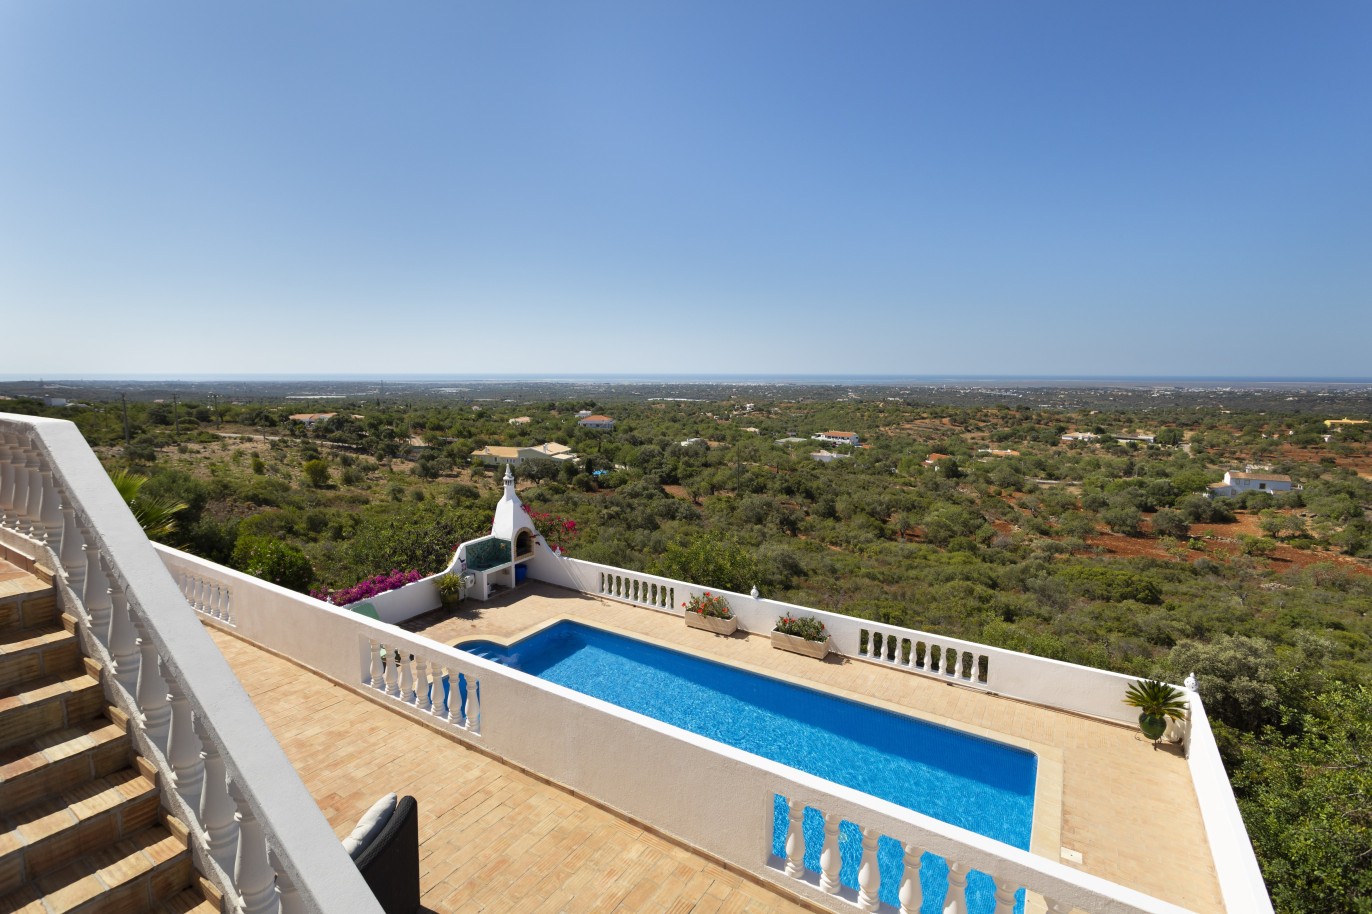 5 bedroom villa with pool and sea view, for sale in Estoi, Algarve_230463